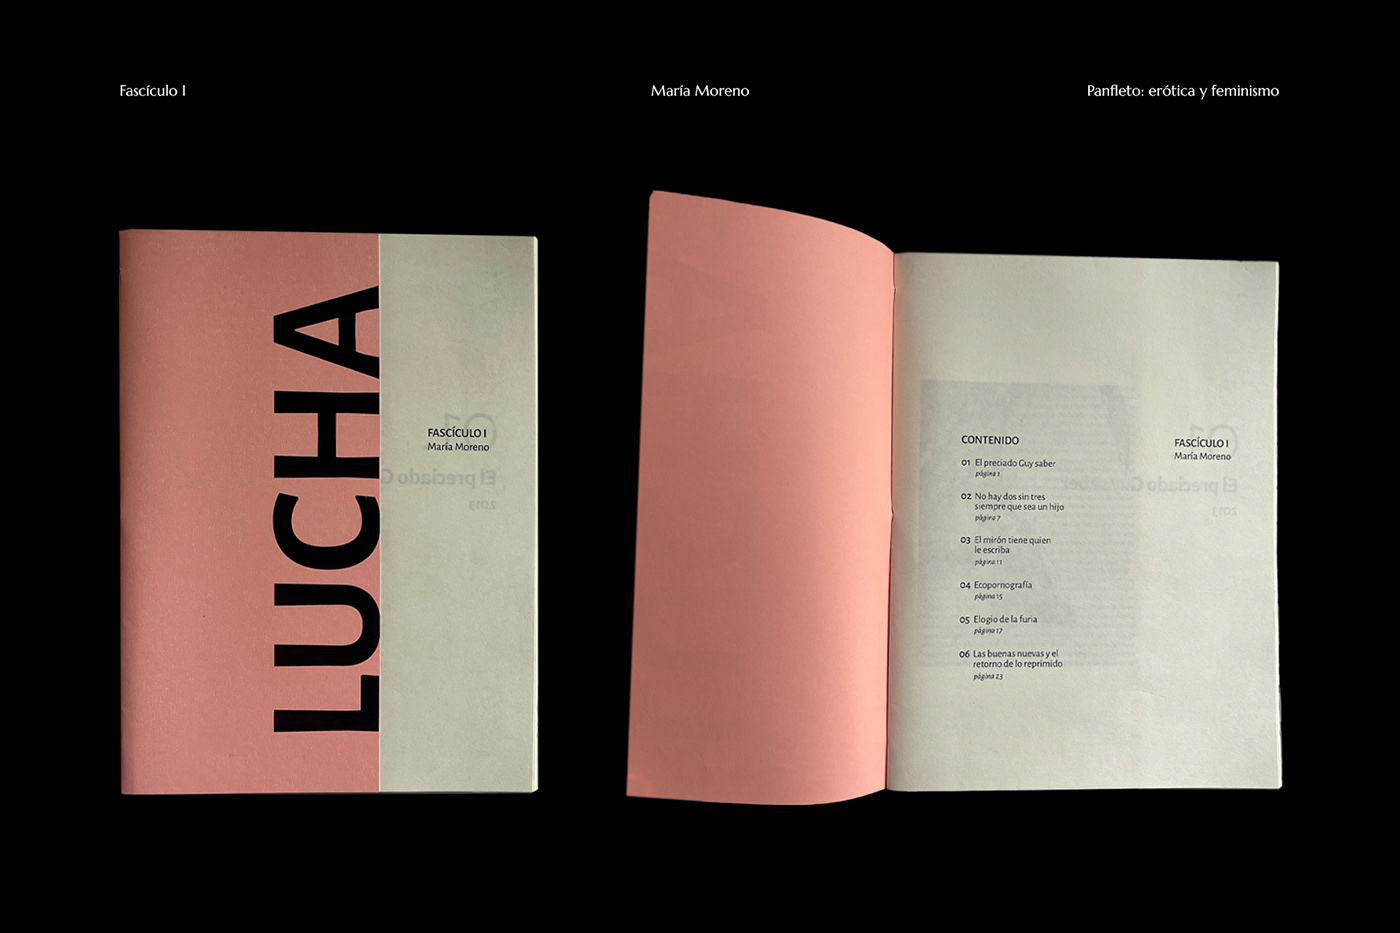 Diseño editorial diseño gráfico design Graphic Designer editorial fadu uba fasciculo manela